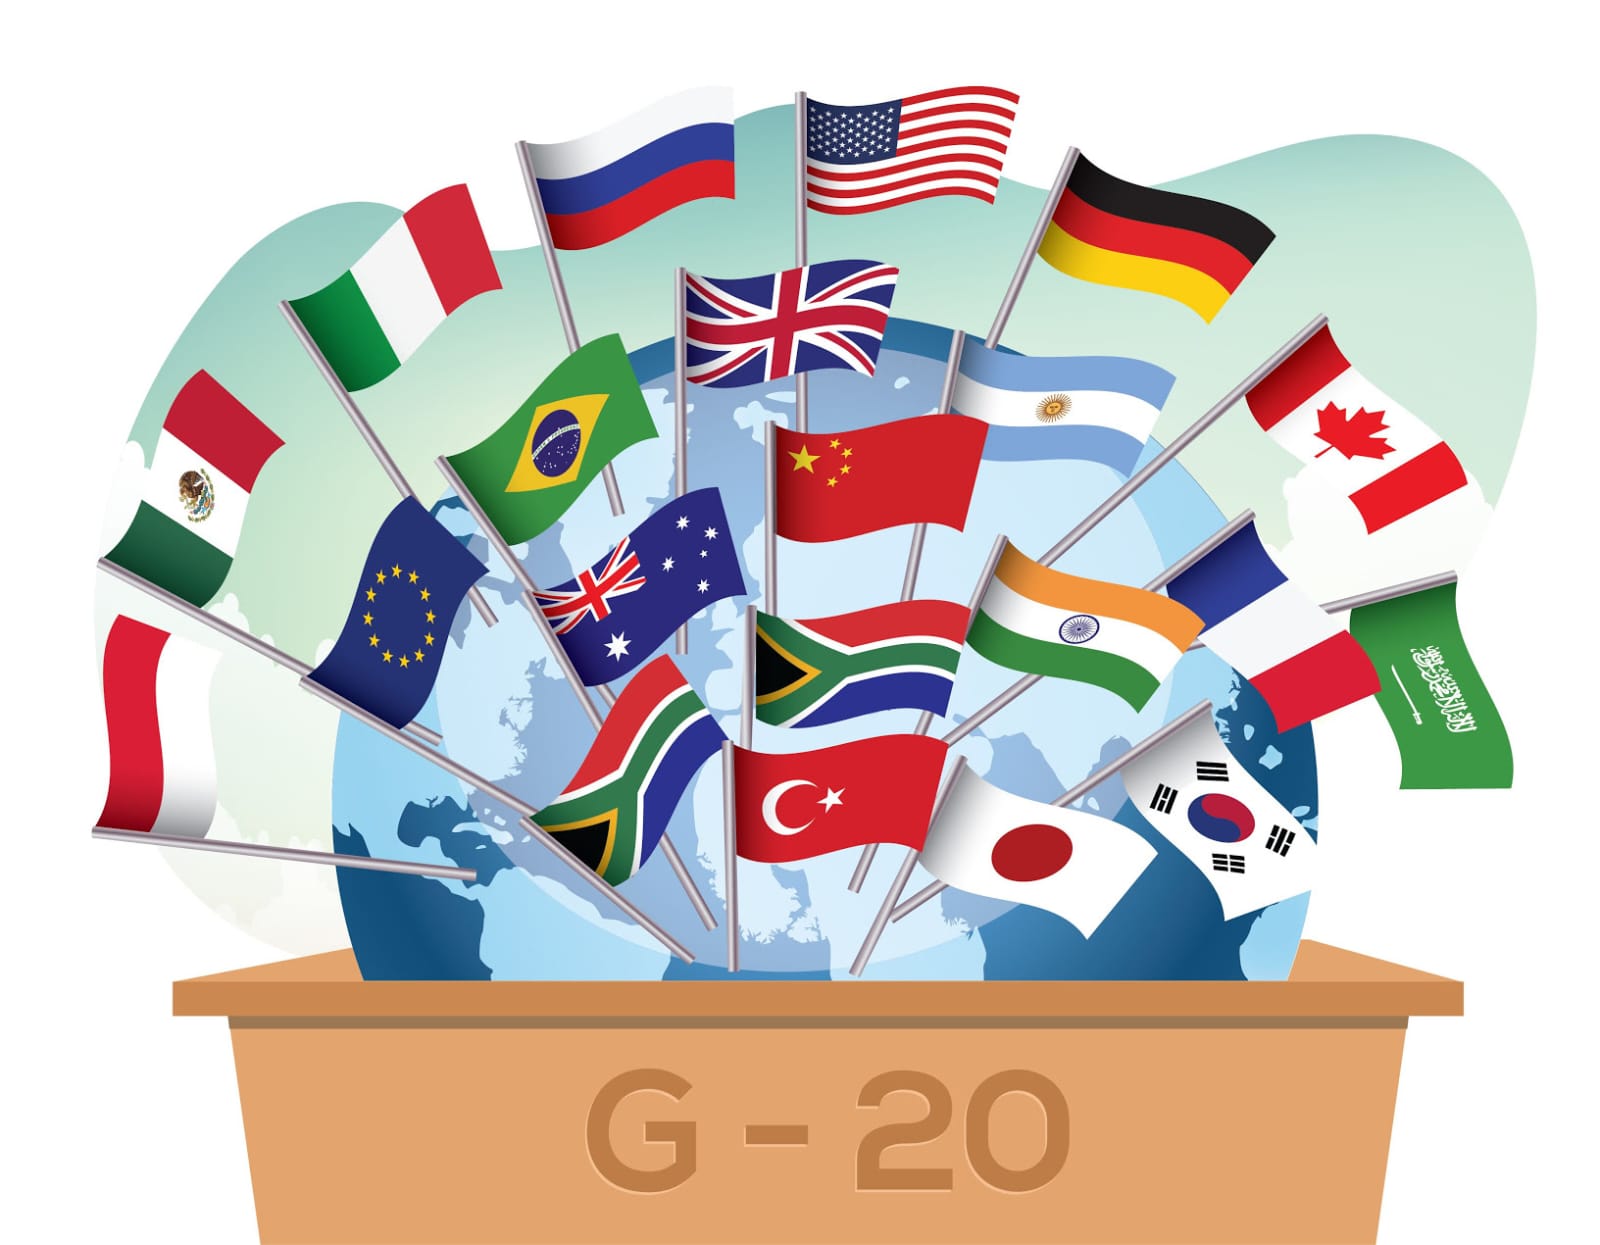 Presidensi G20 Berdampak Positif Bagi Perekonomian Indonesia